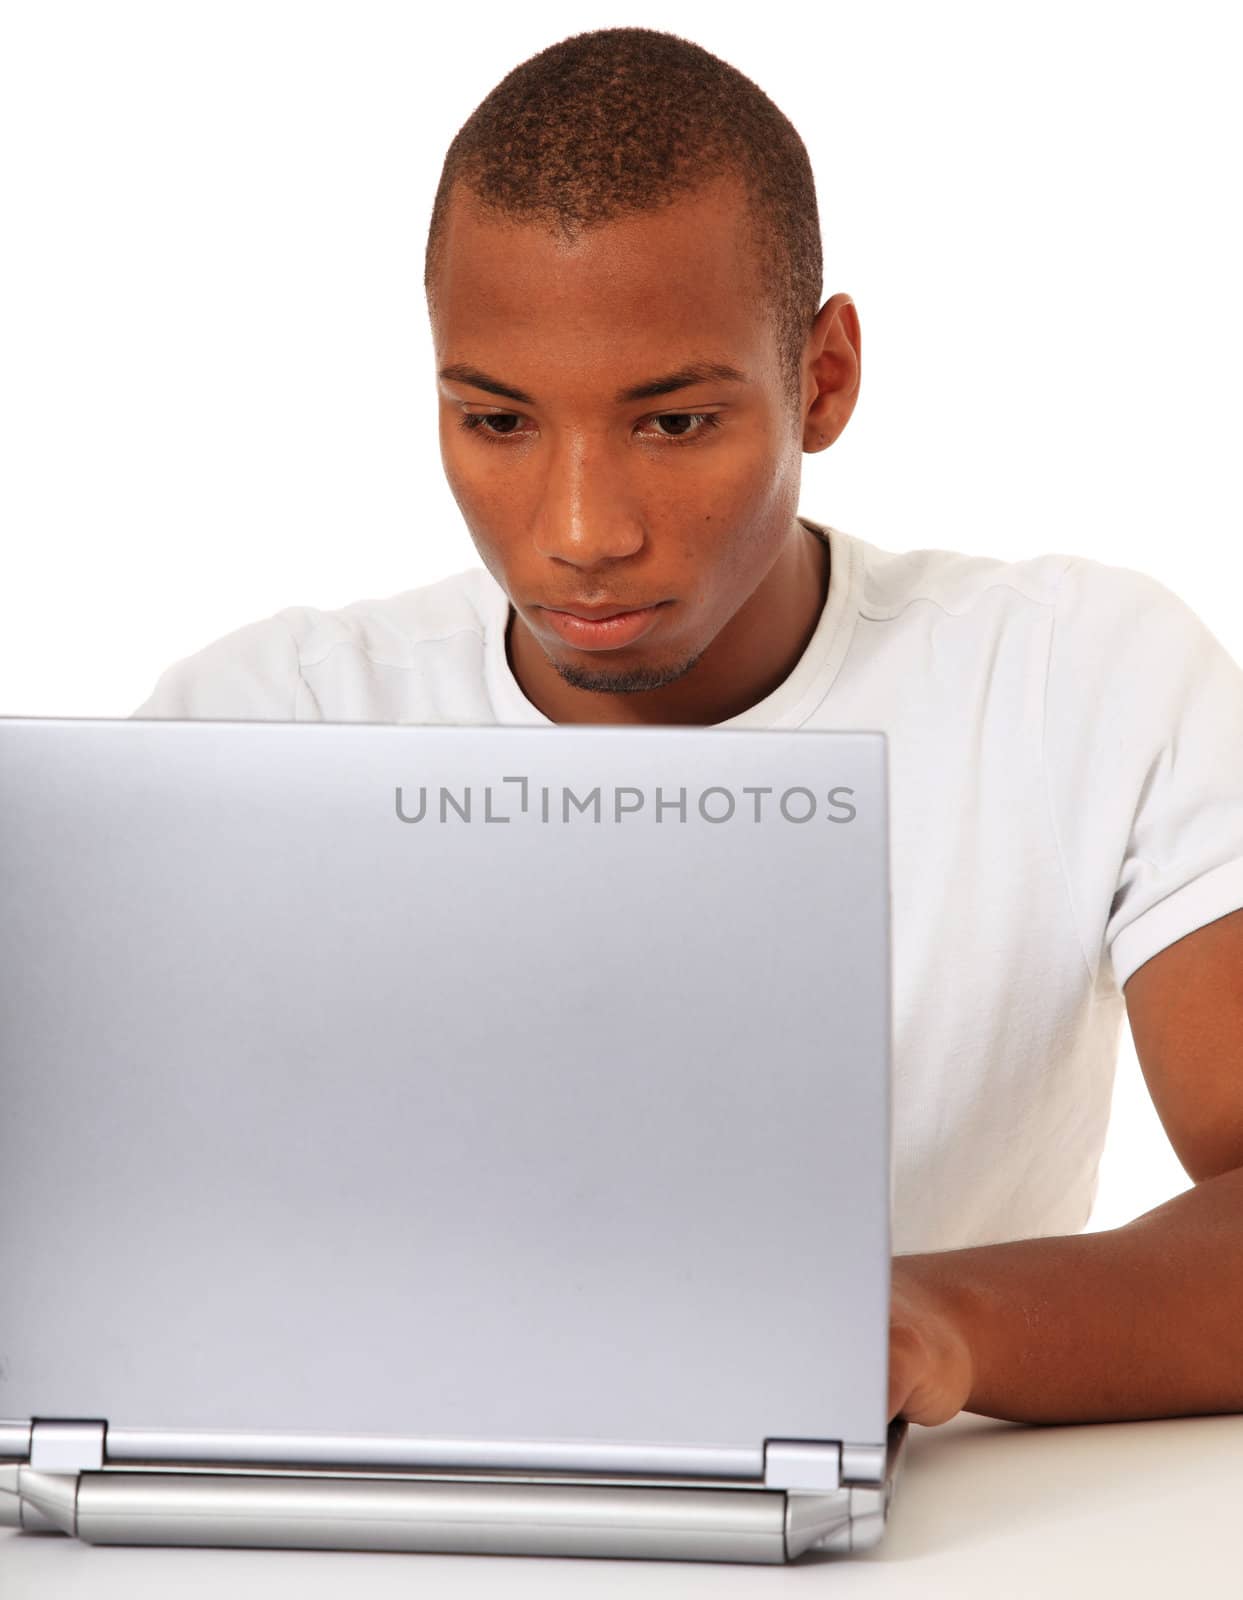 Black man using computer by kaarsten